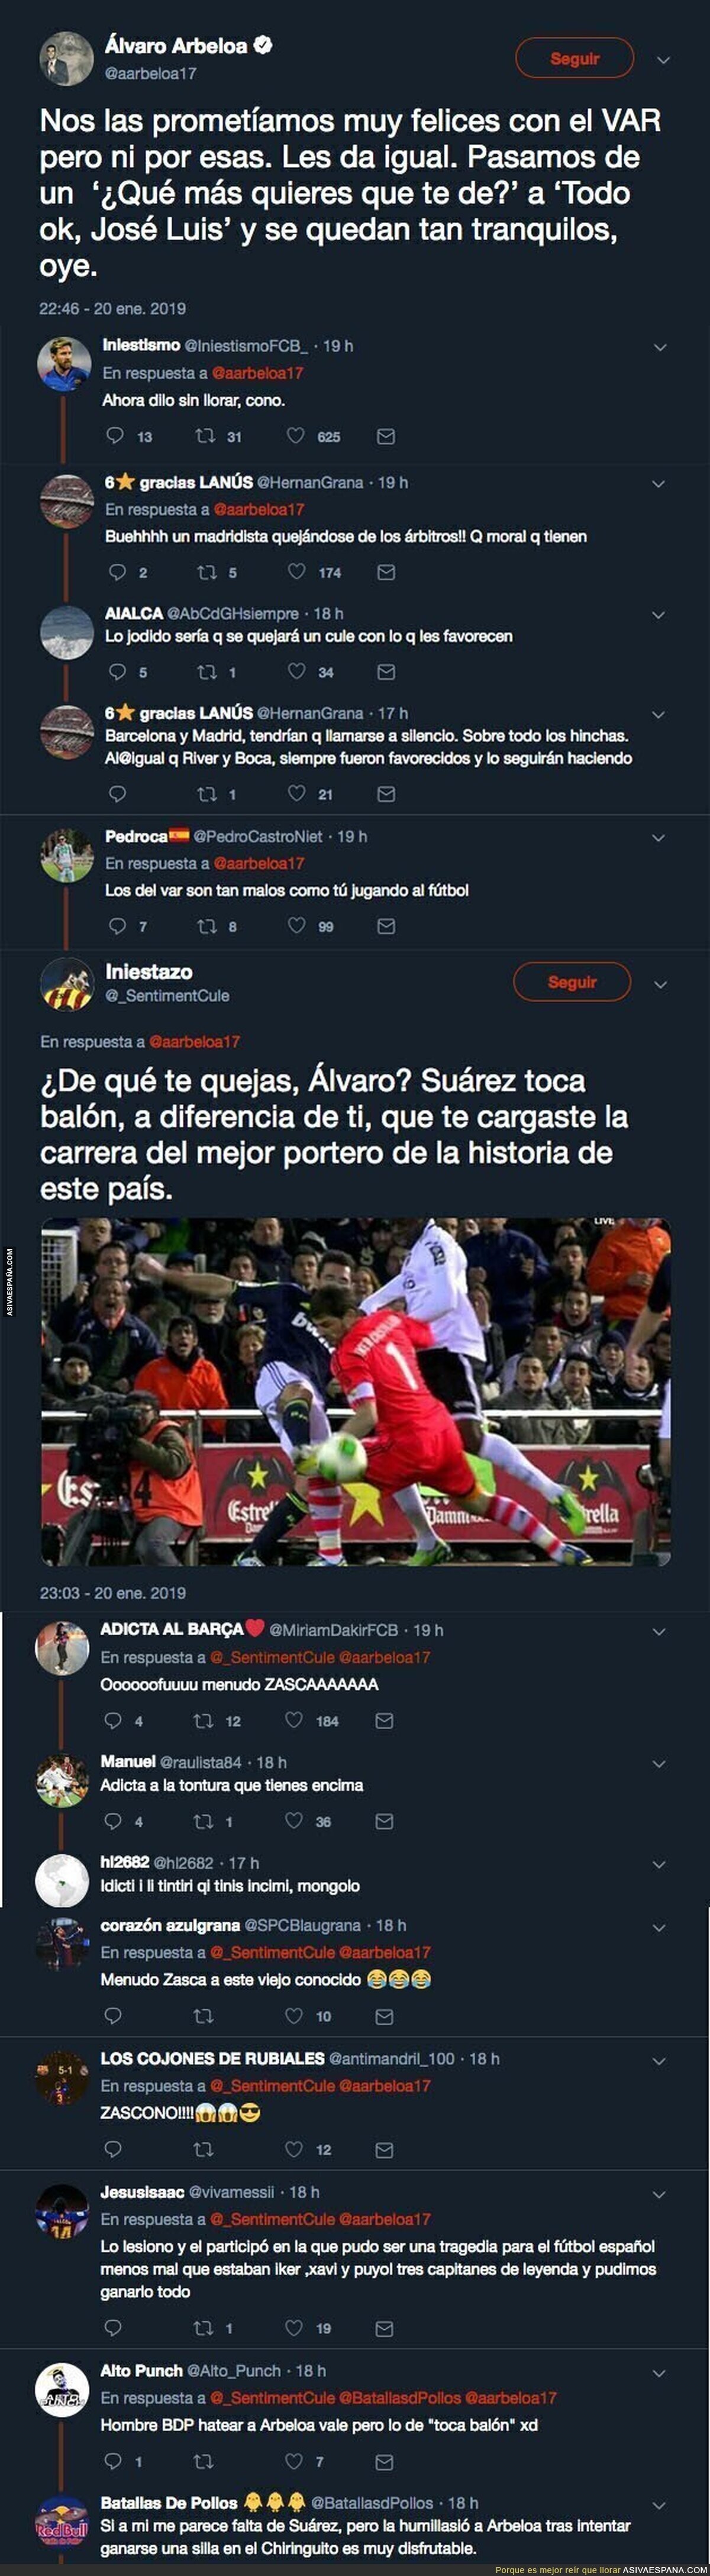 Arbeloa se queja del VAR tras un partido del Barça y un usuario de Twitter le responde de forma que le deja temblando